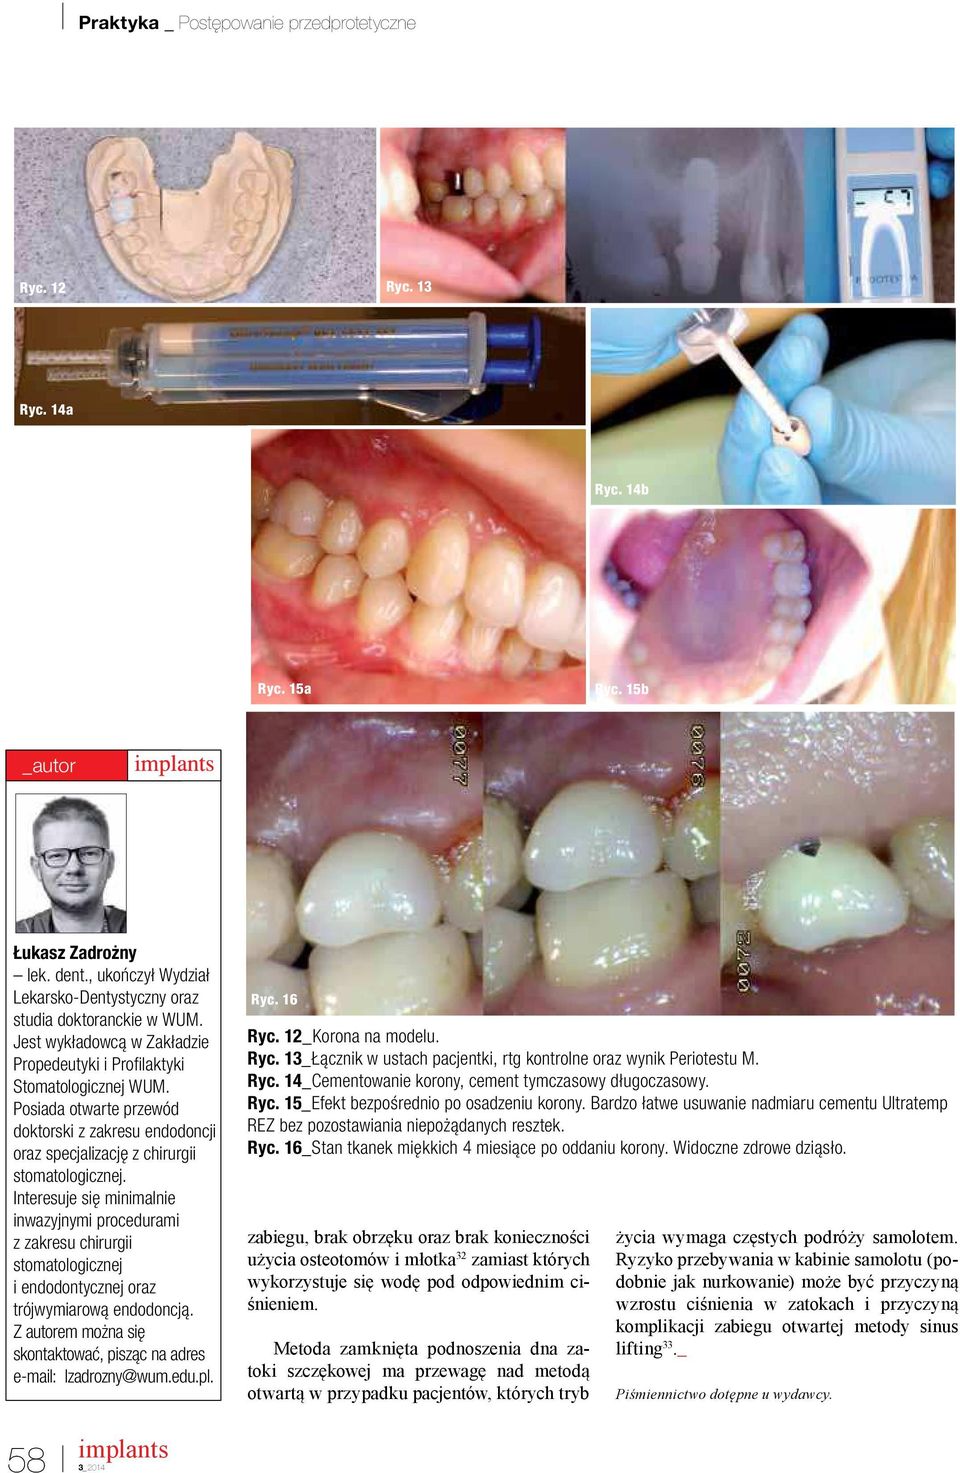 Interesuje się minimalnie inwazyjnymi procedurami z zakresu chirurgii stomatologicznej i endodontycznej oraz trójwymiarową endodoncją.